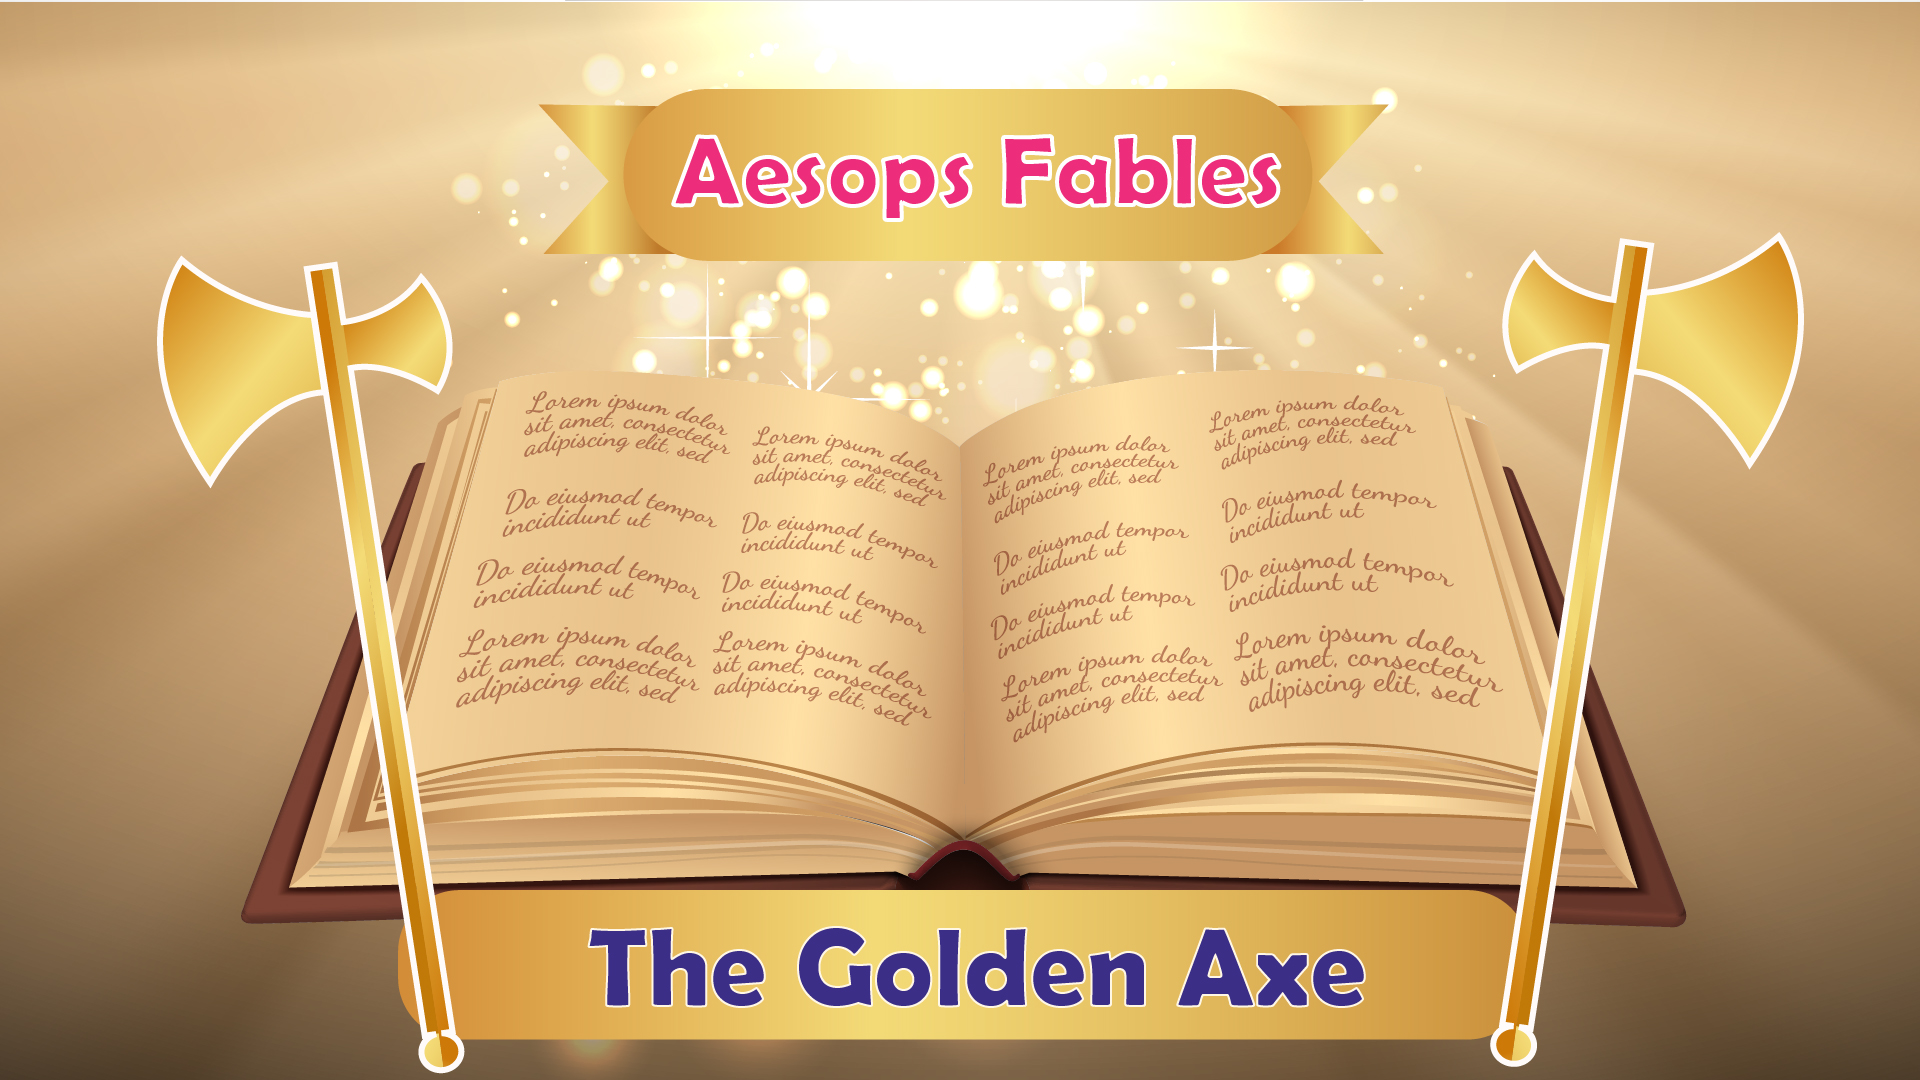 The Golden Axe